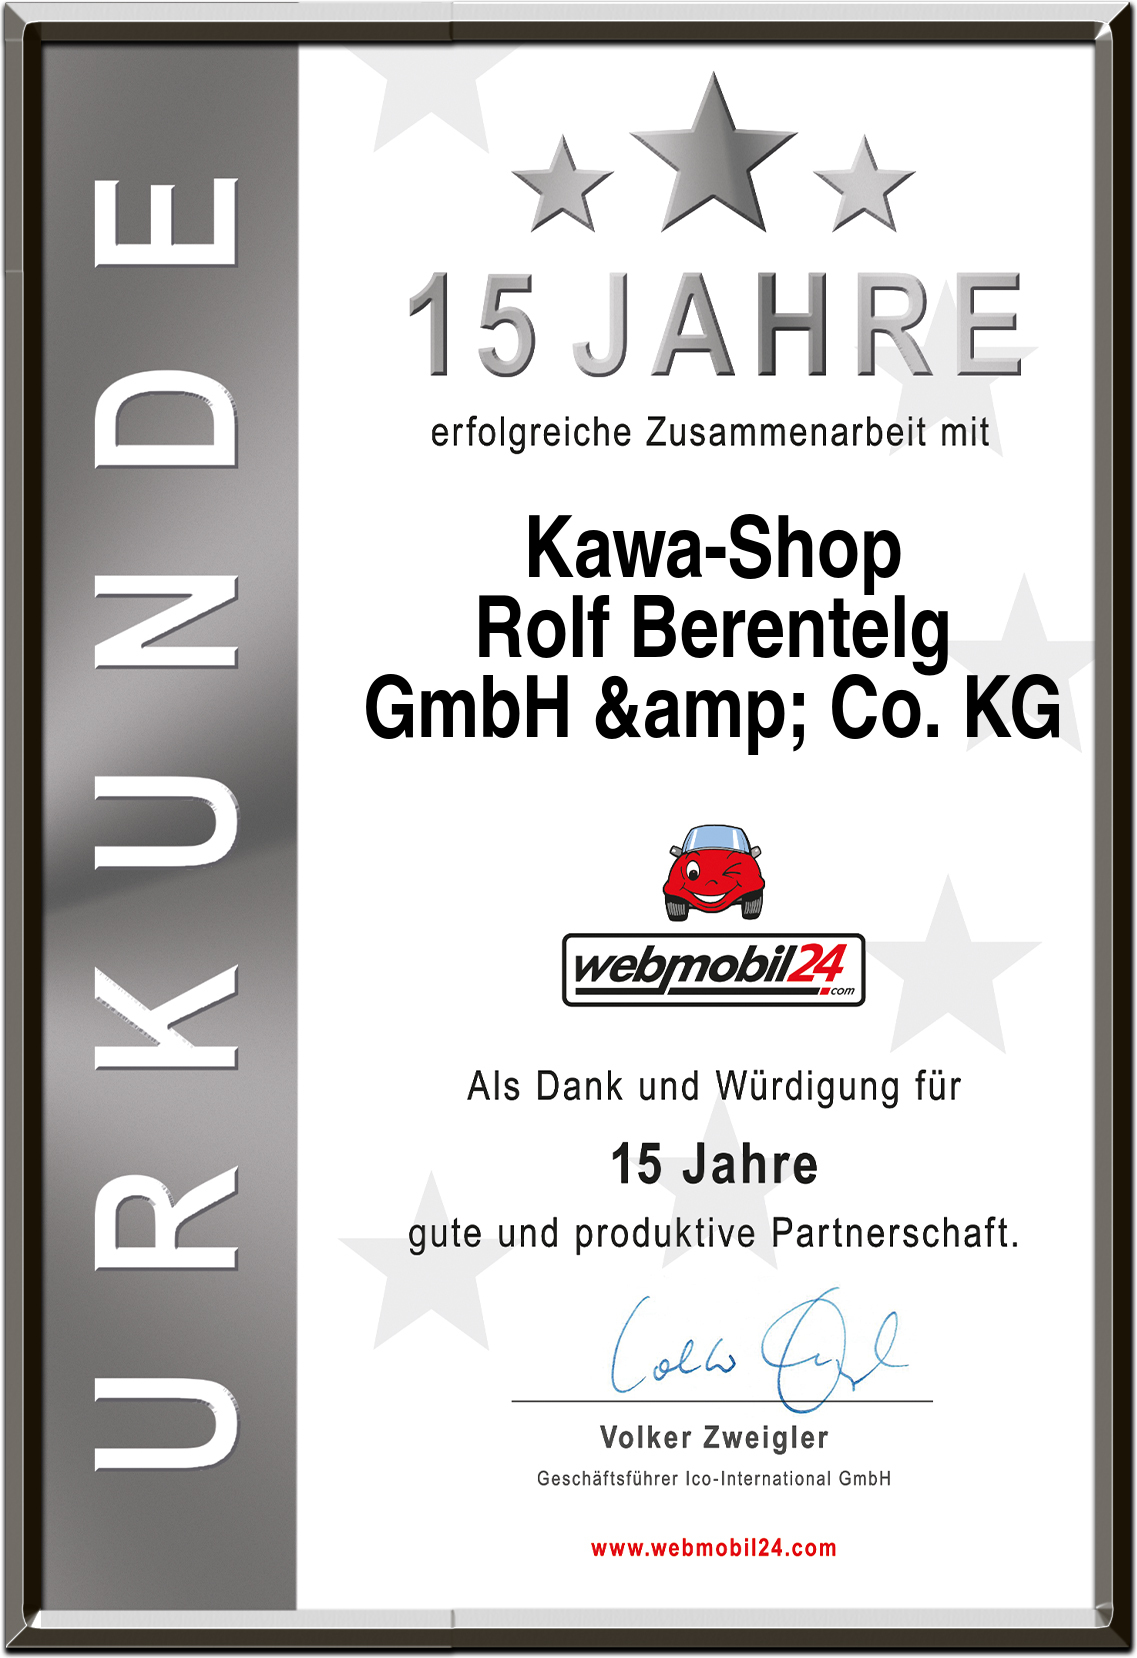 Kawa-Shop
Rolf Berentelg
GmbH & Co. KG